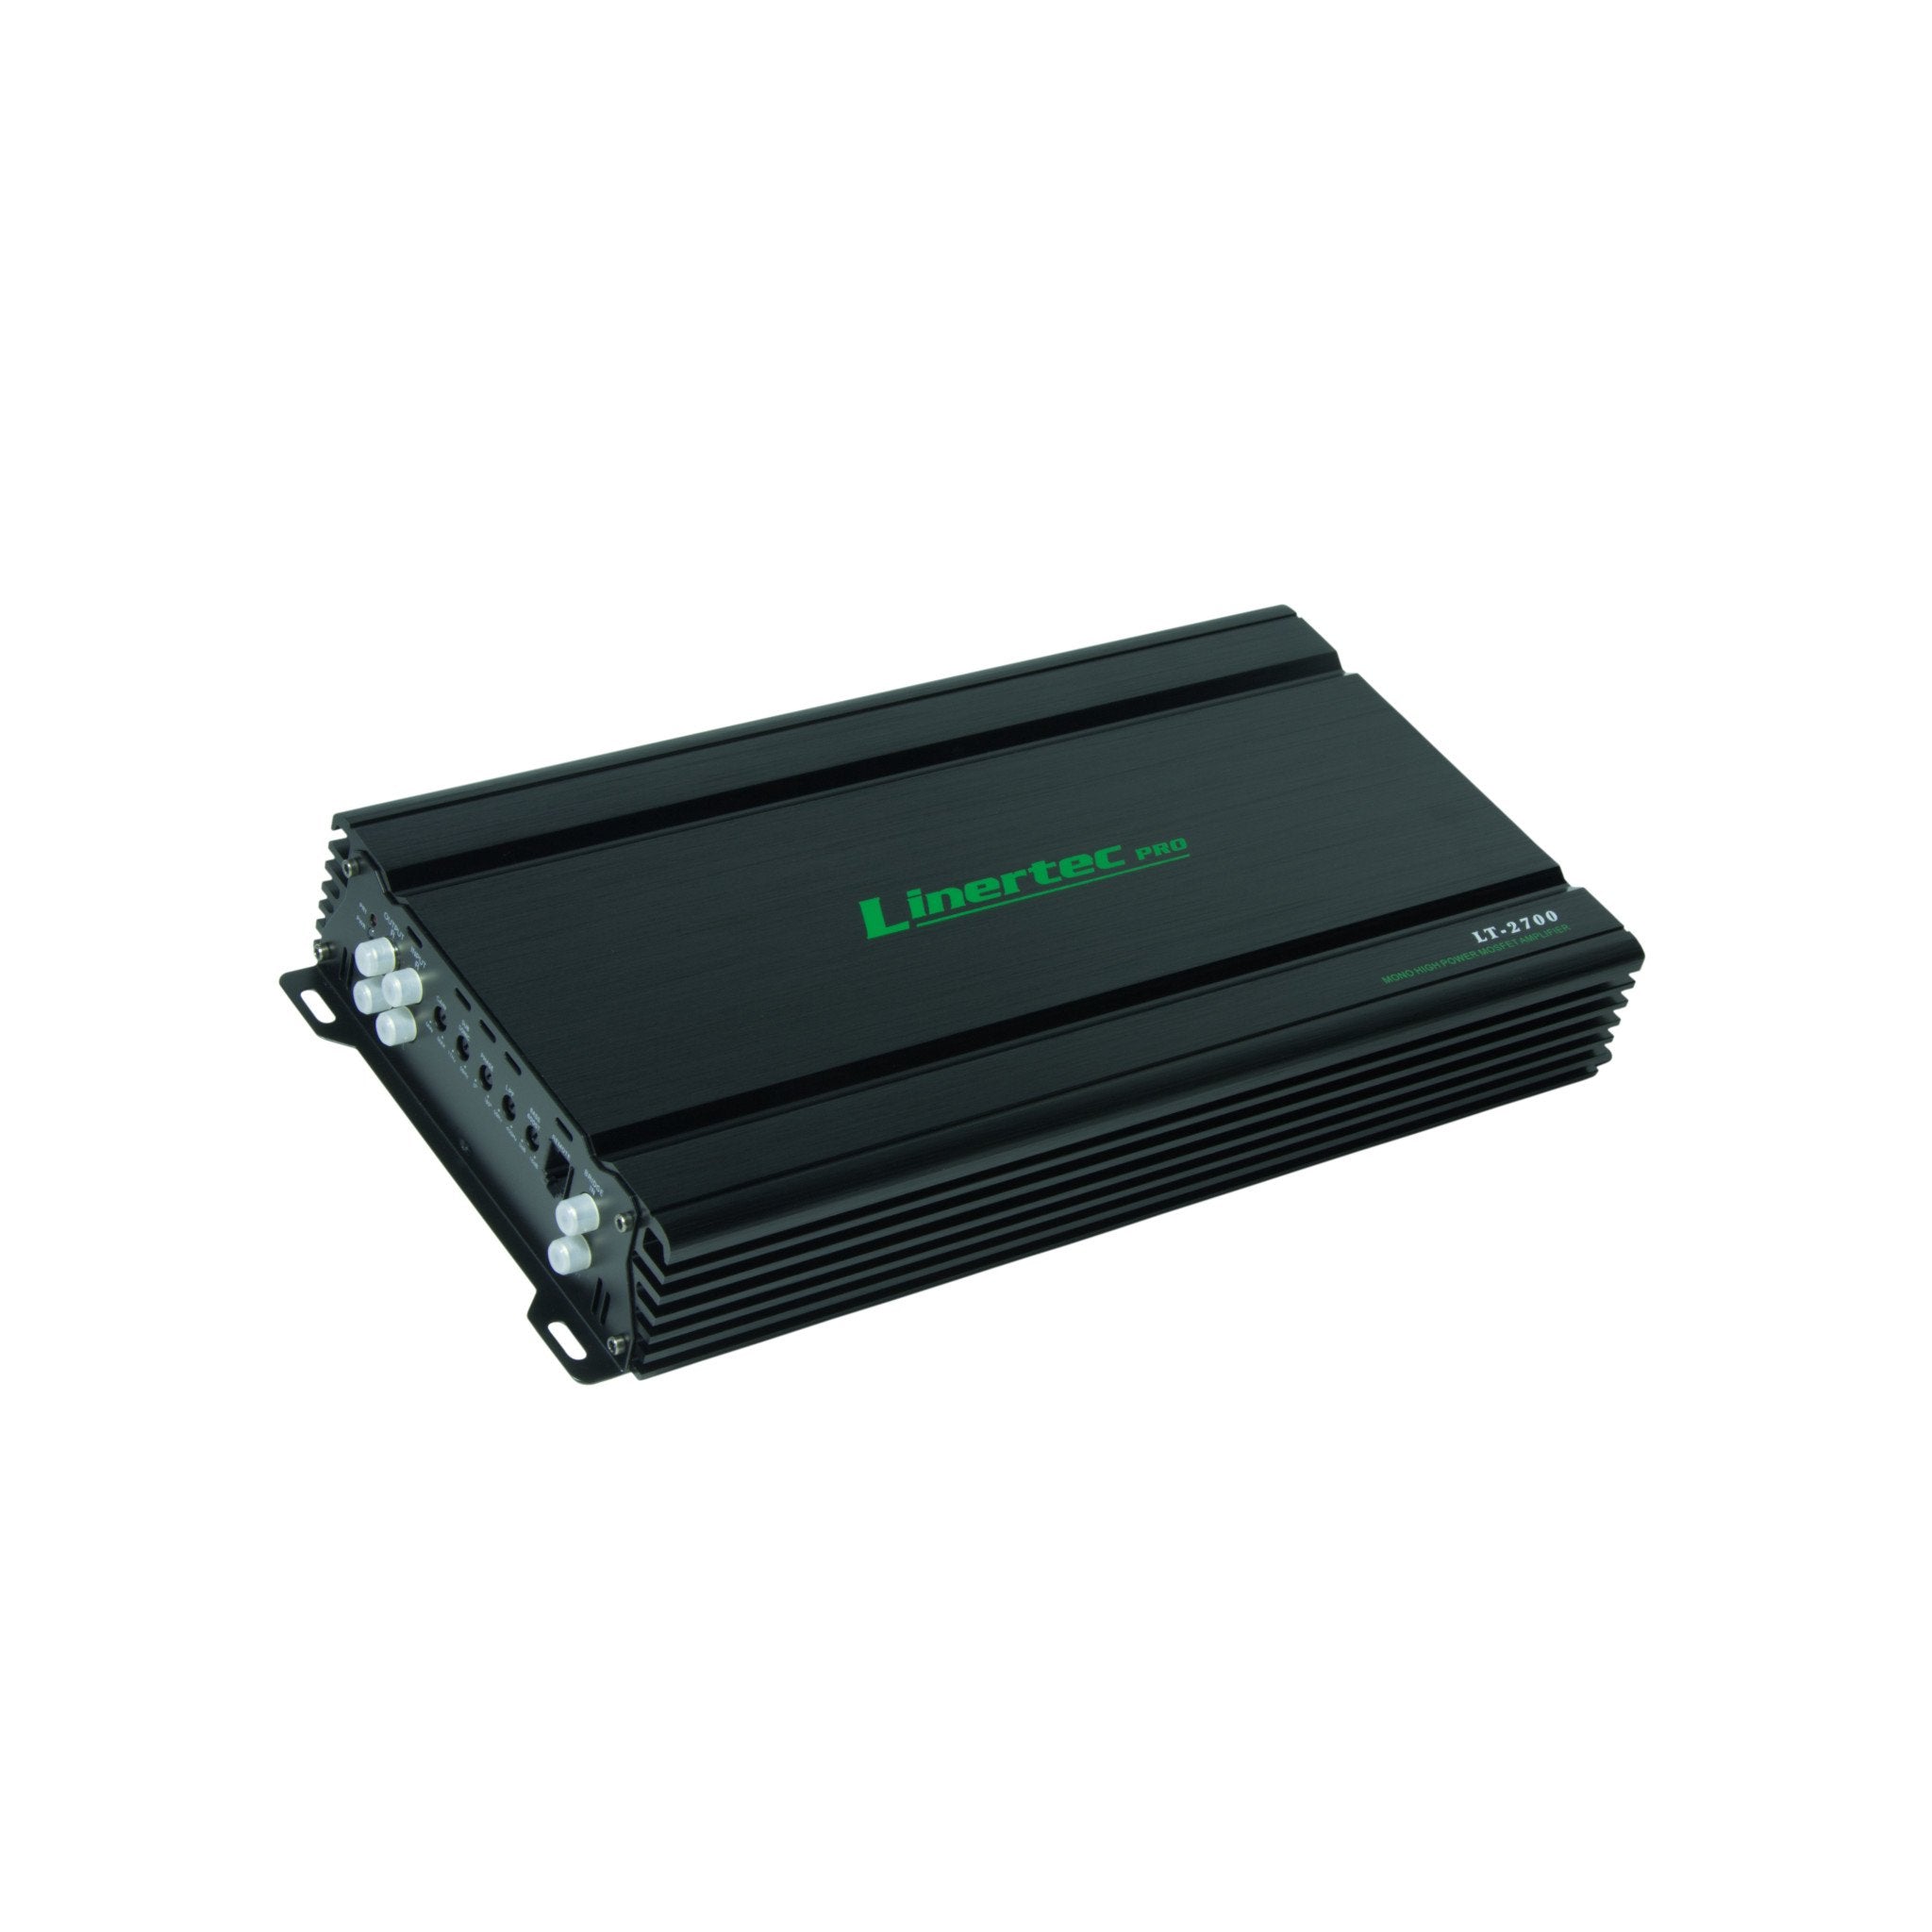 linertec lt-2700 black car audio monoblock amplifier angle view